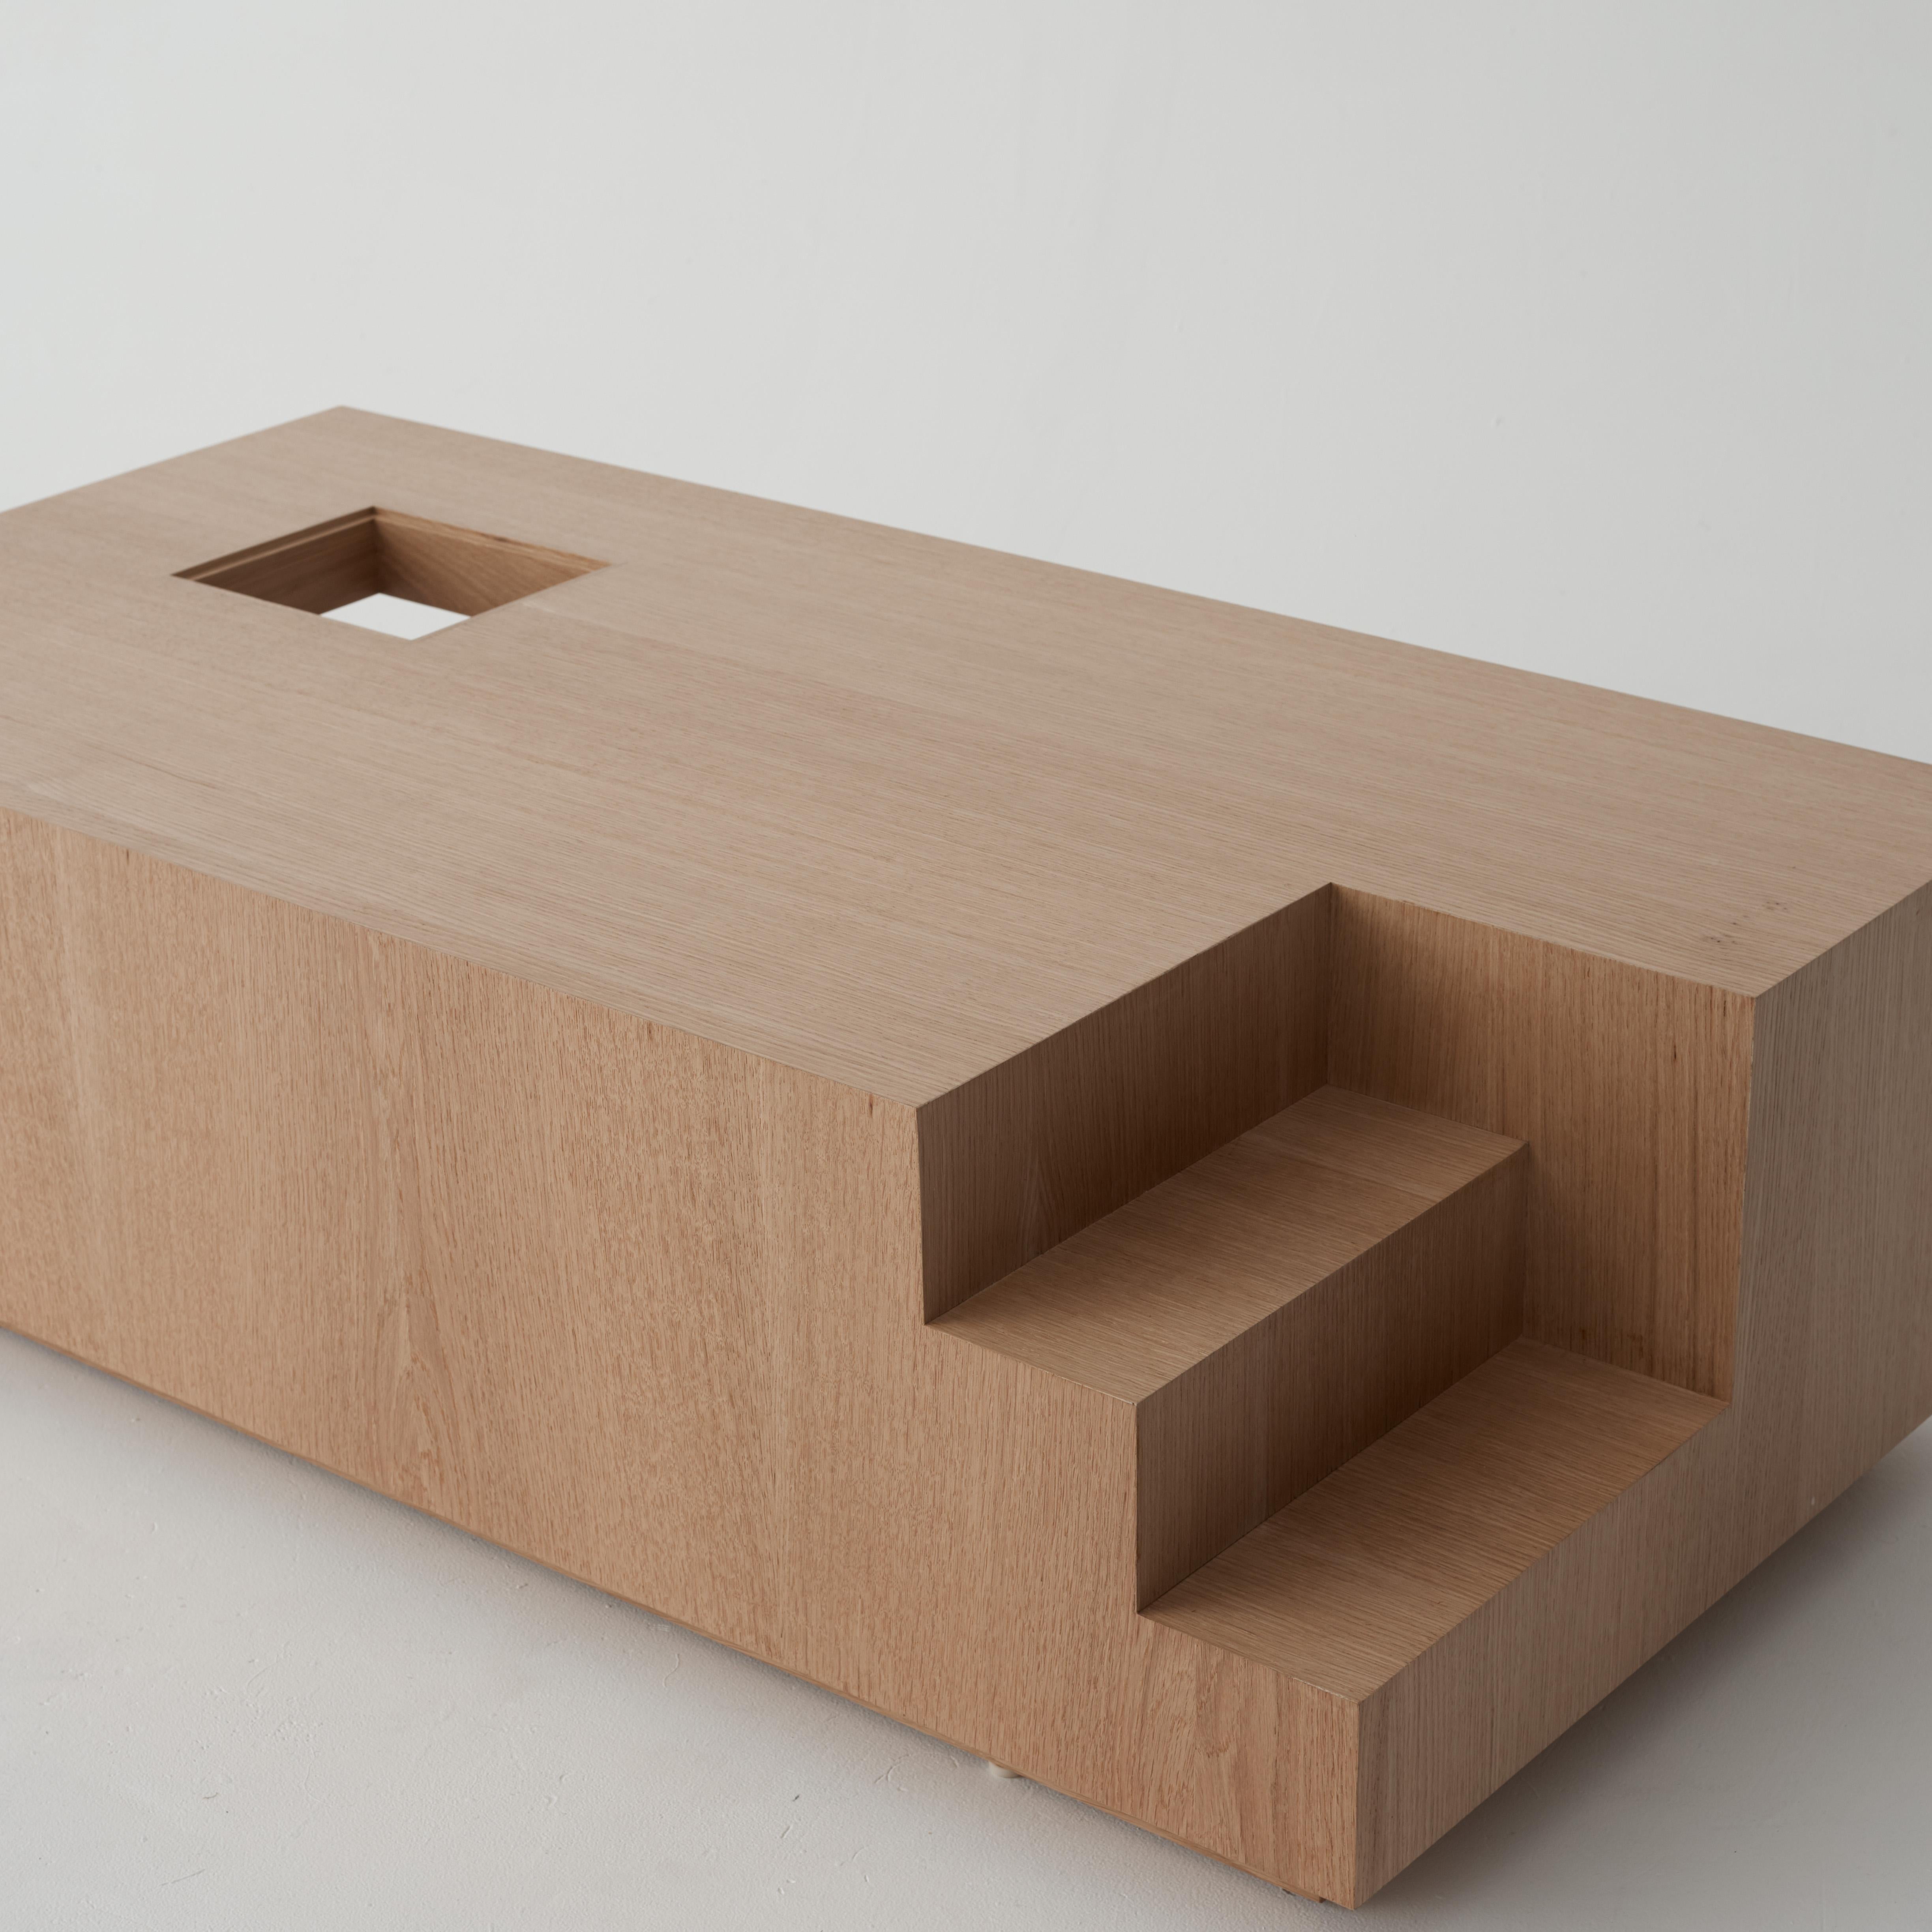 L'homme modulaire de Le Corbusier et le nombre d'or définissent les proportions de la table M-Coffee. Cette table est une étude d'échelle ; conçue comme une simple masse rectangulaire creusée aux points clés pour produire des détails architecturaux.